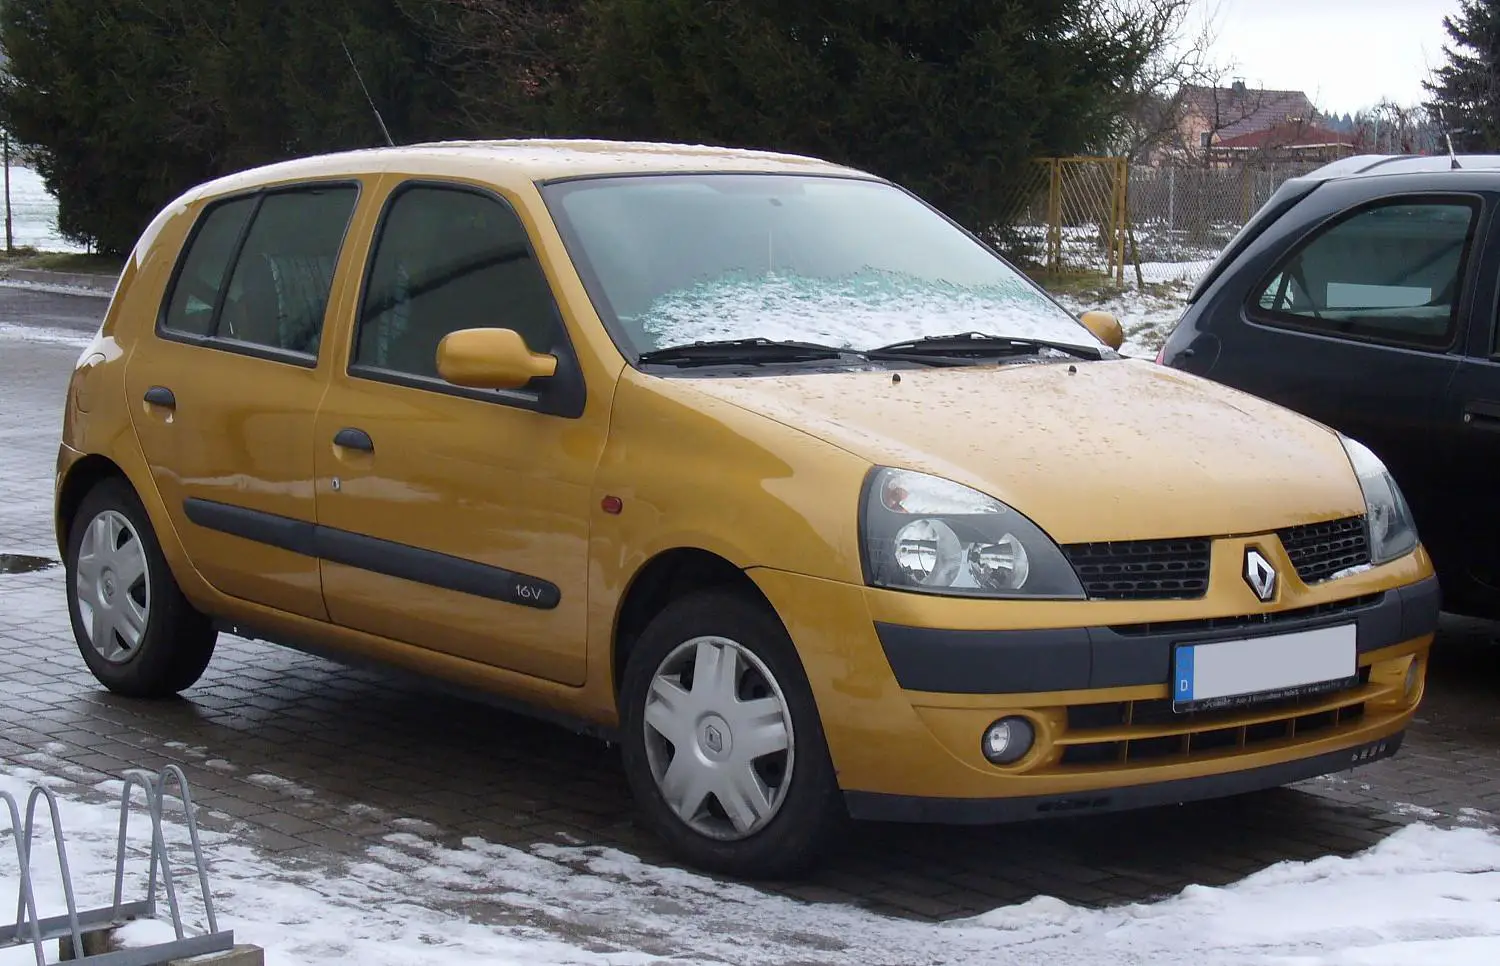 Stadion beton betrouwbaarheid Review: Renault Clio II ( 1998 - 2005 ) - Almost Cars Reviews